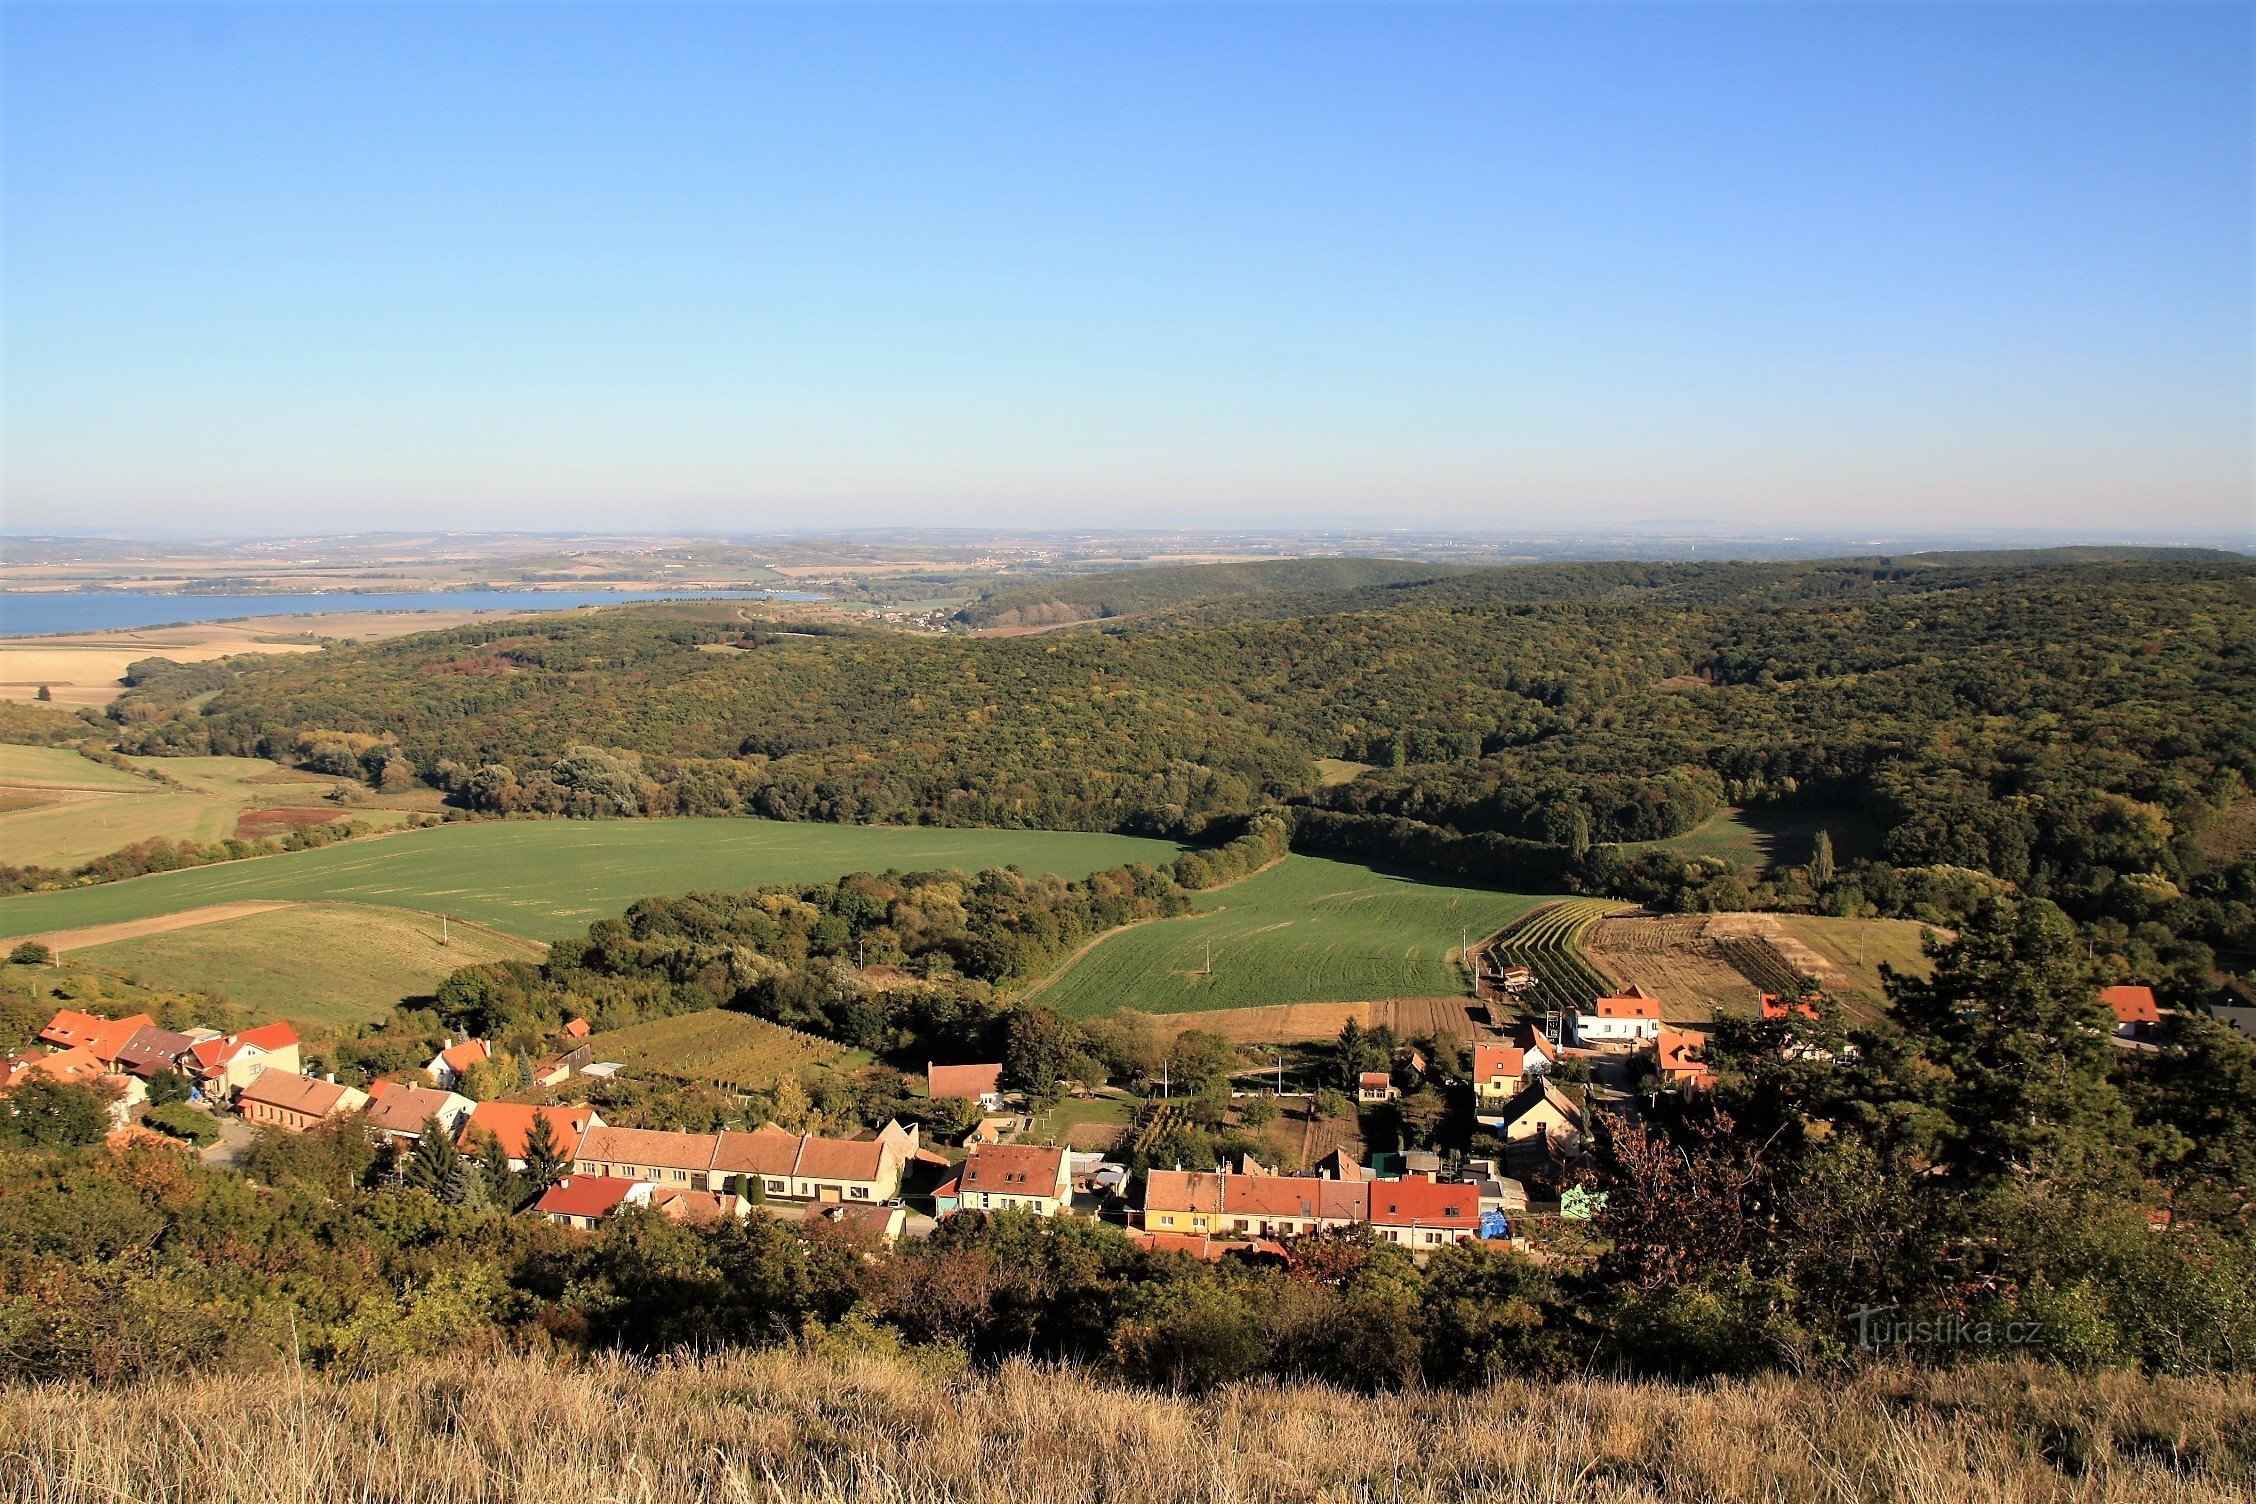 Floresta de Milovický - vista da parte norte do complexo florestal de Stolova Hora